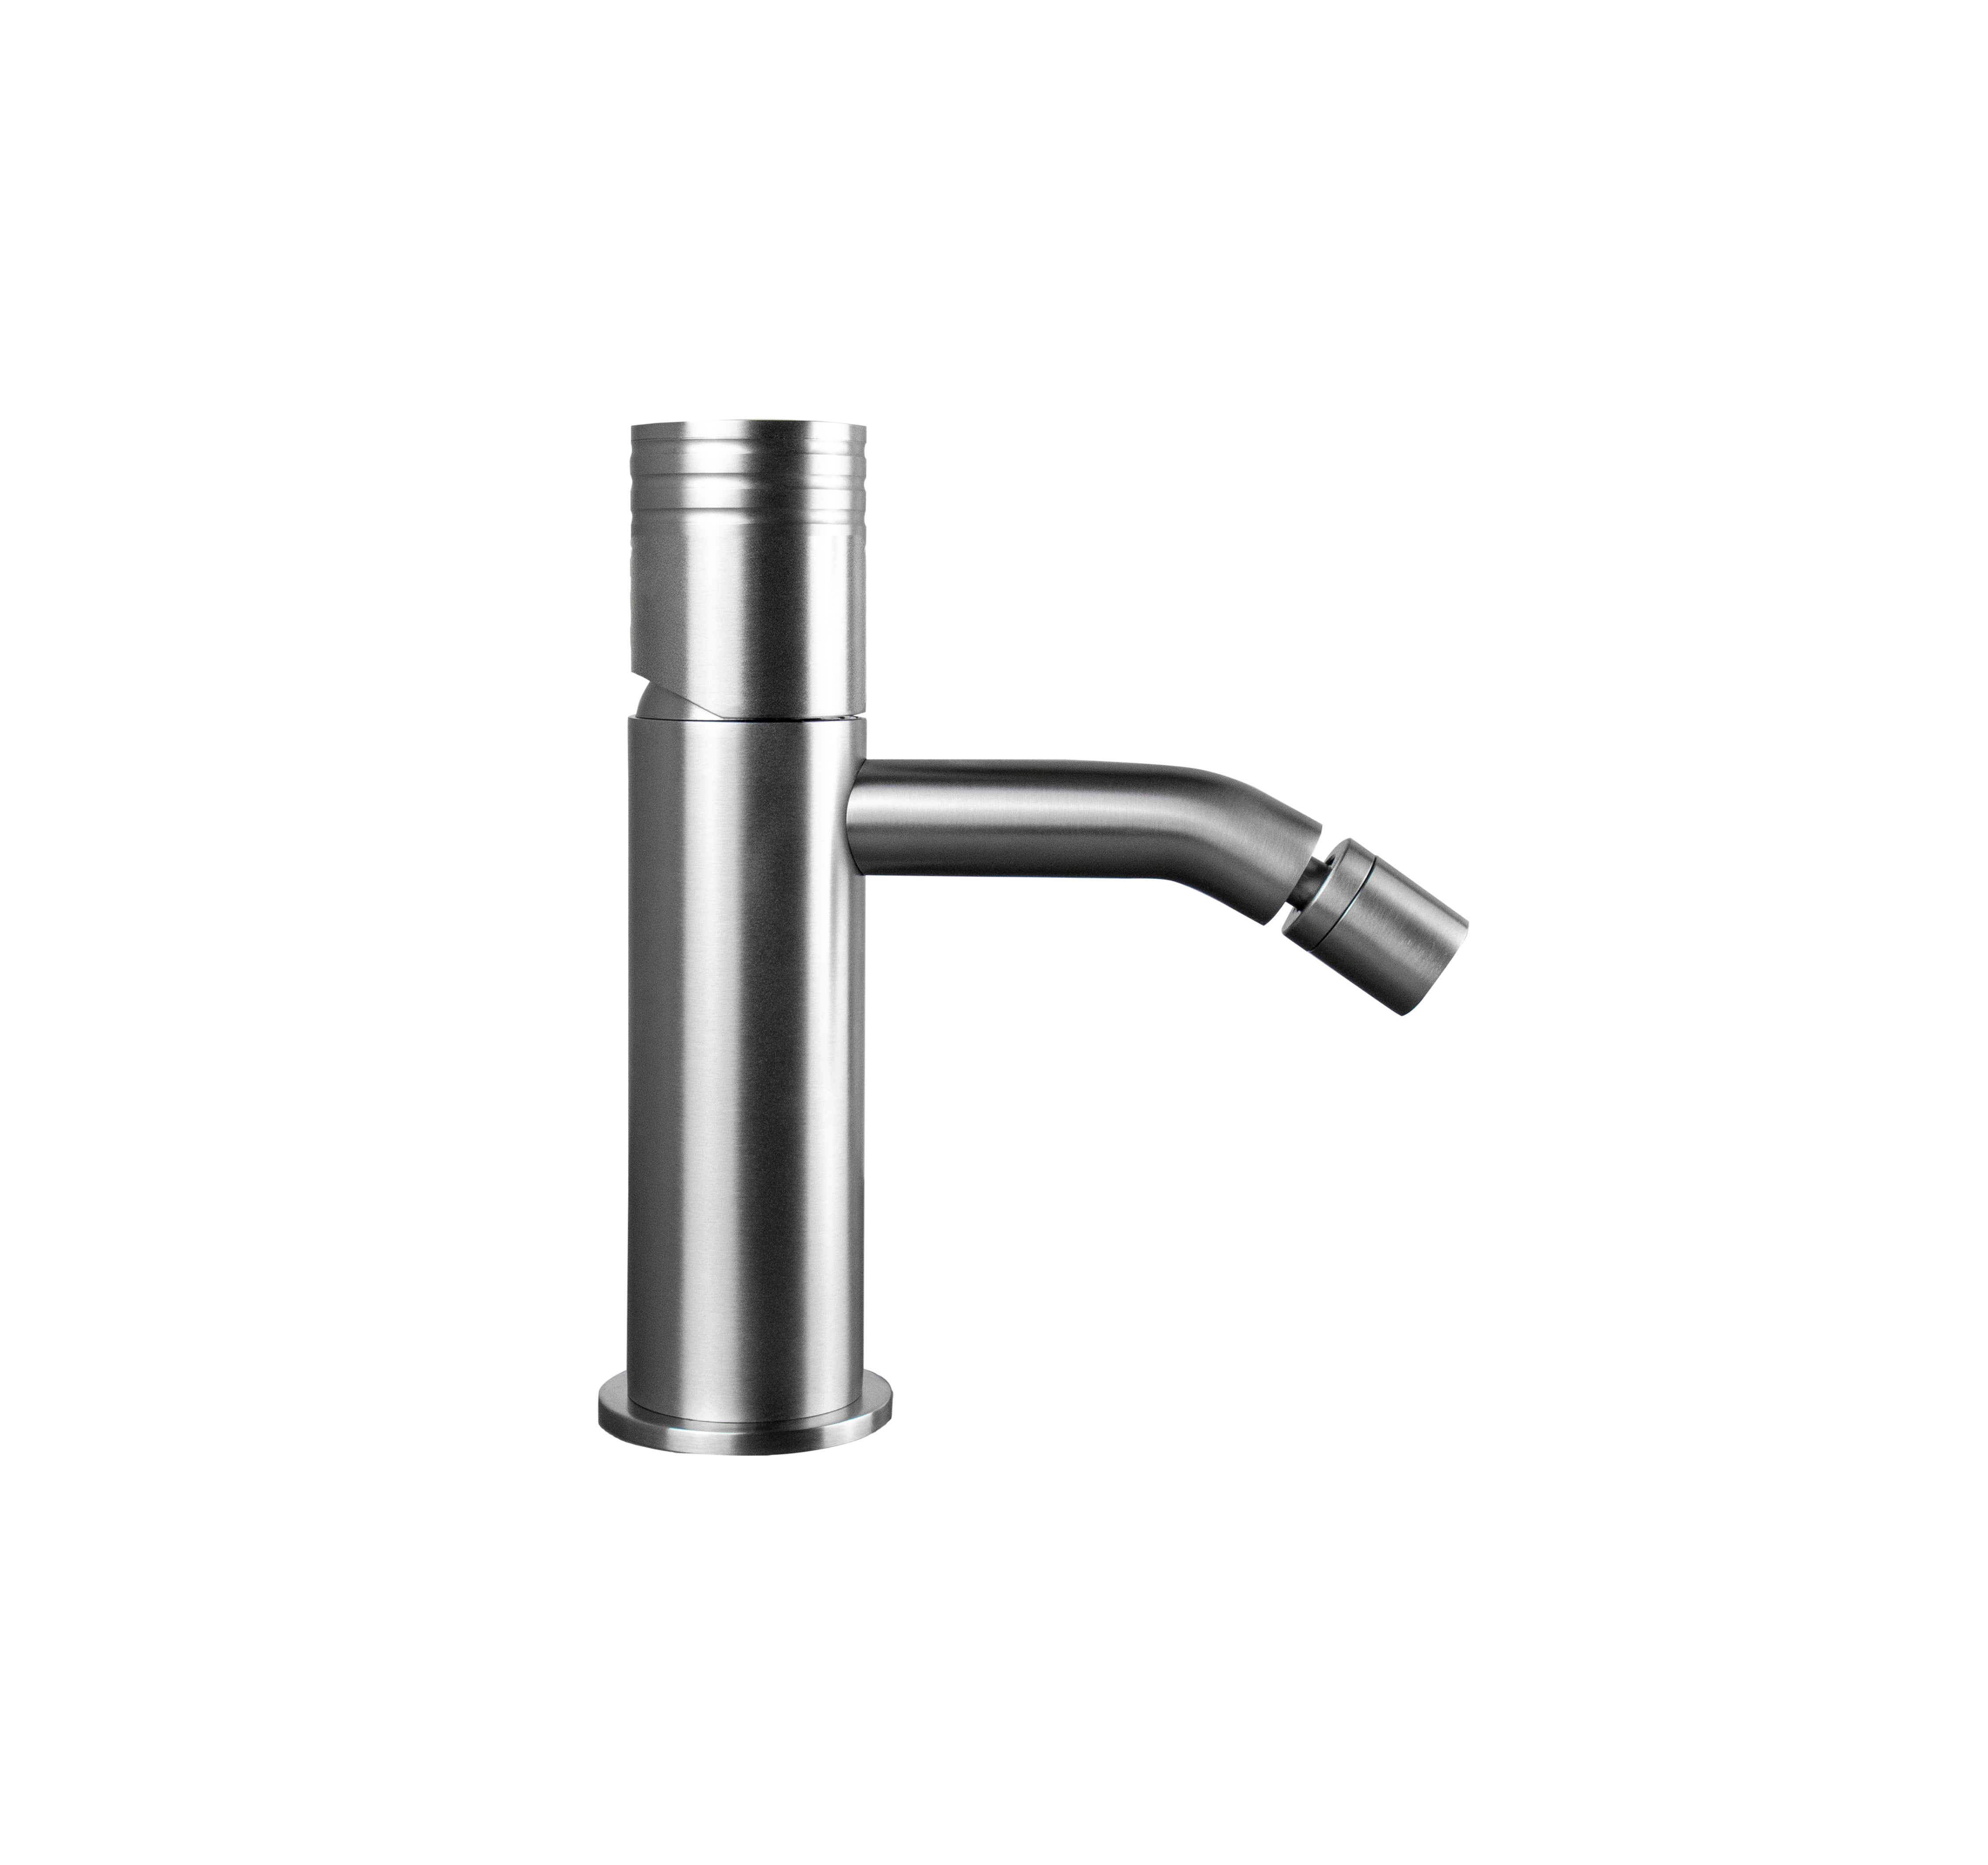 Tubico Loira rubinetto miscelatore per bidet in acciaio inox 316L satinato Made in Italy T34274S